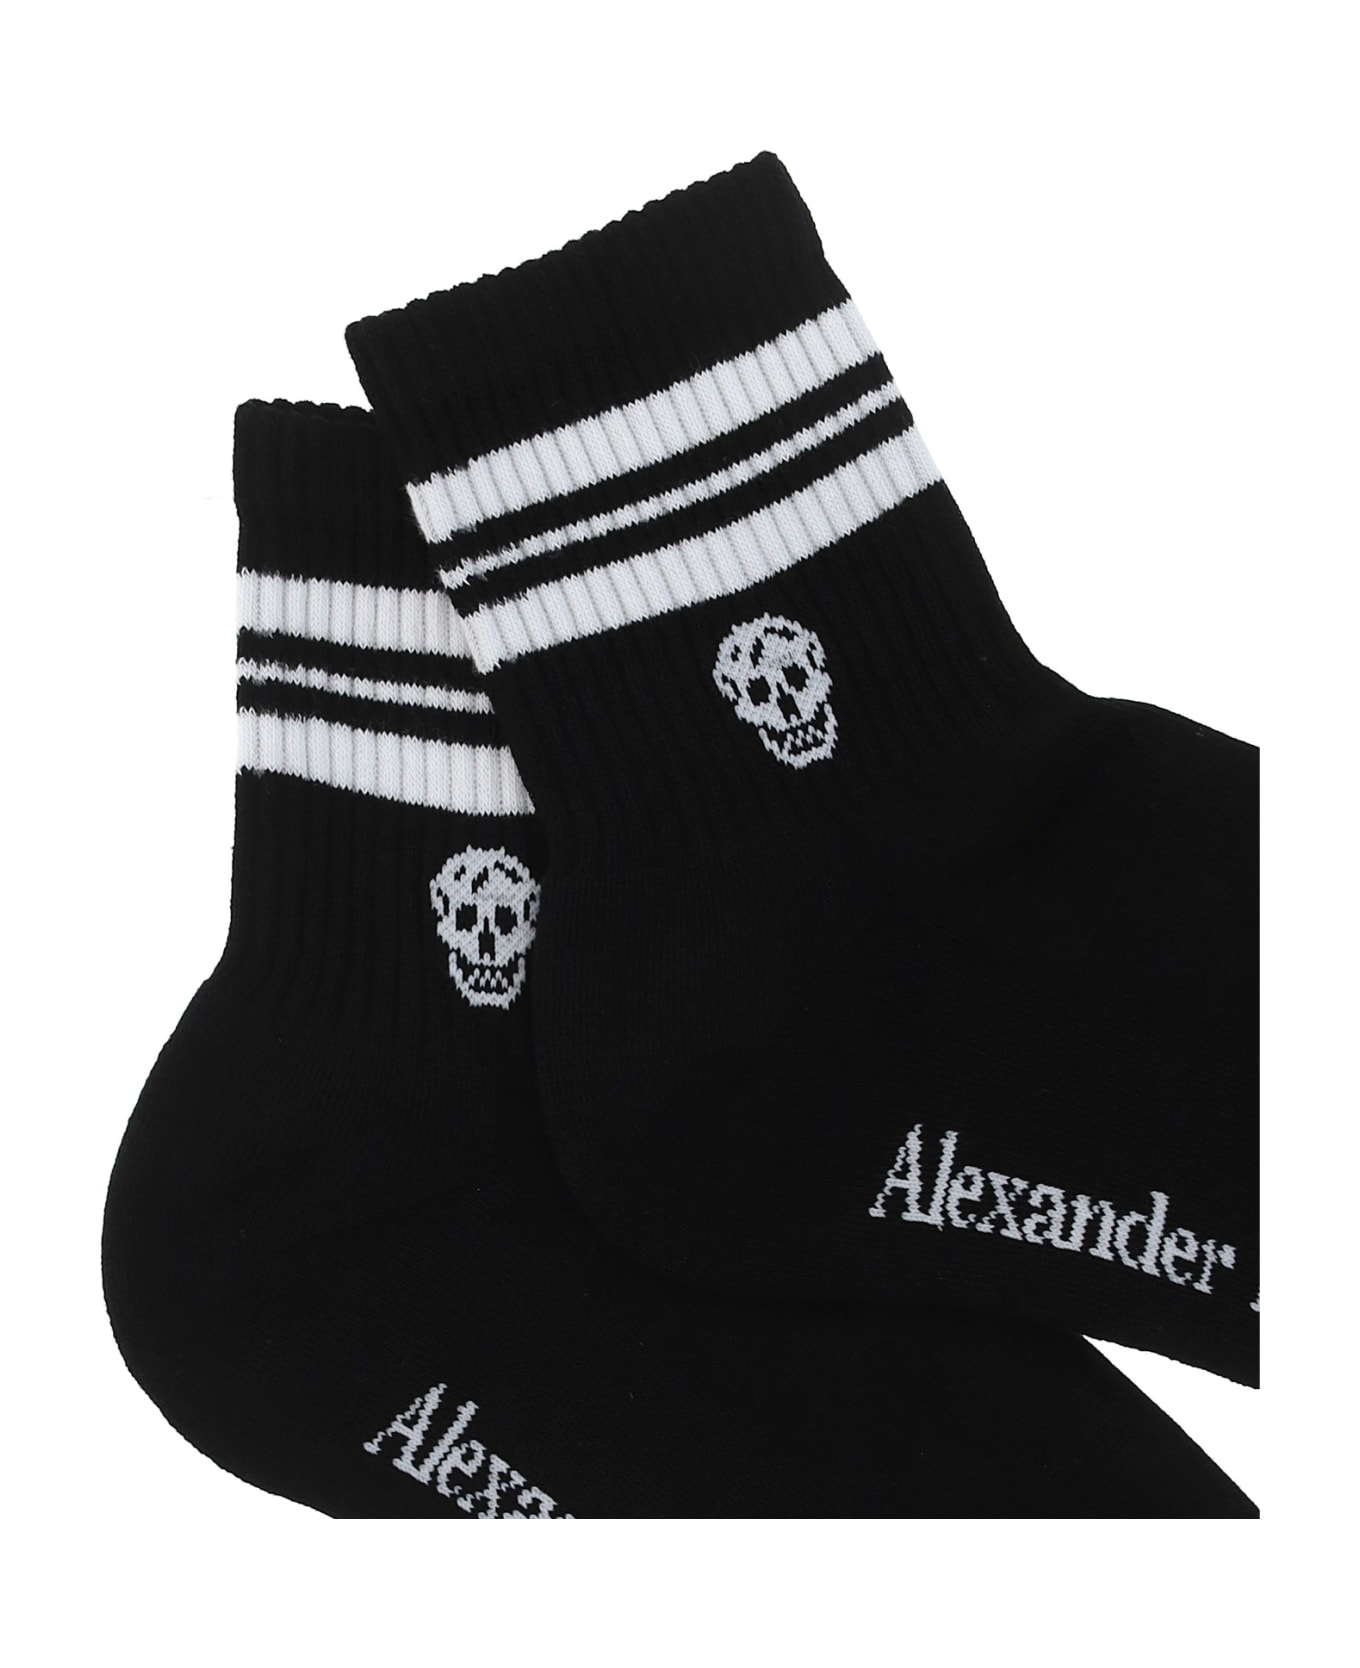 Alexander McQueen Socks - Black/white